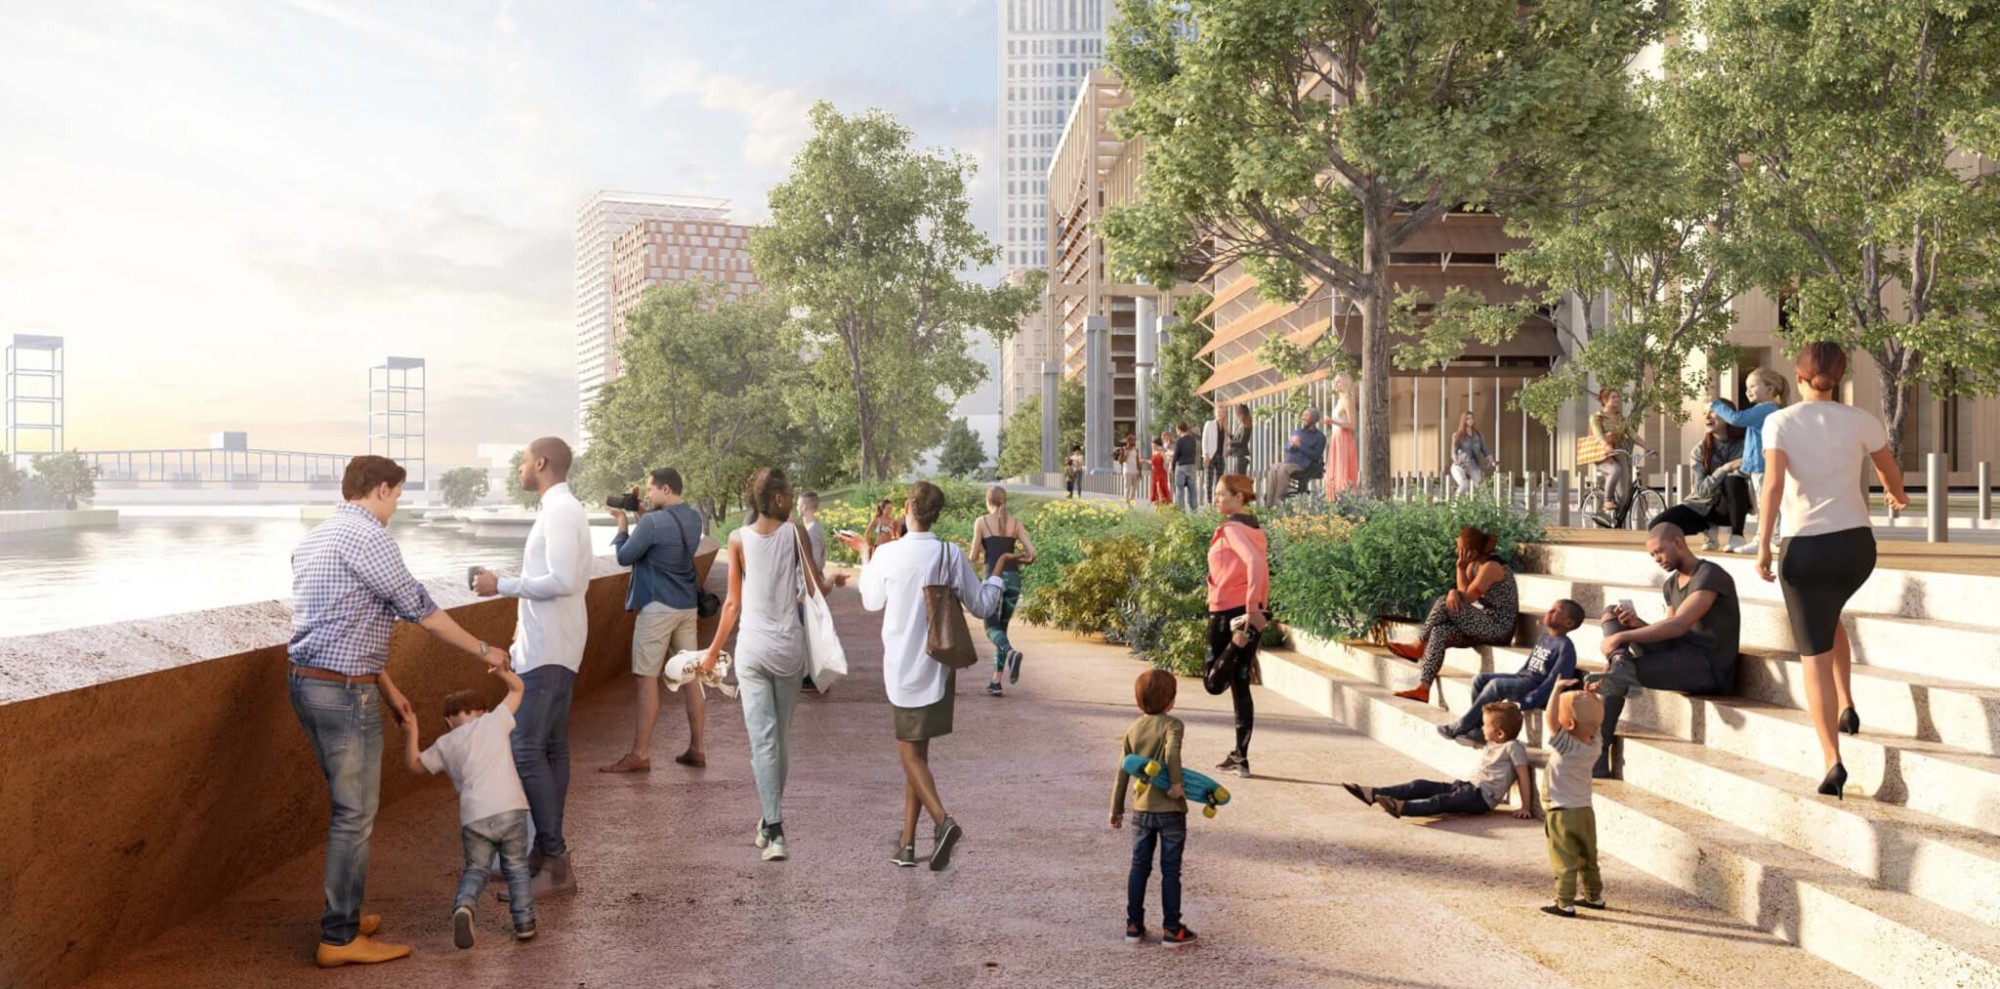 David Adjaye’s riverfront master plan gives us a reason to visit Cleveland